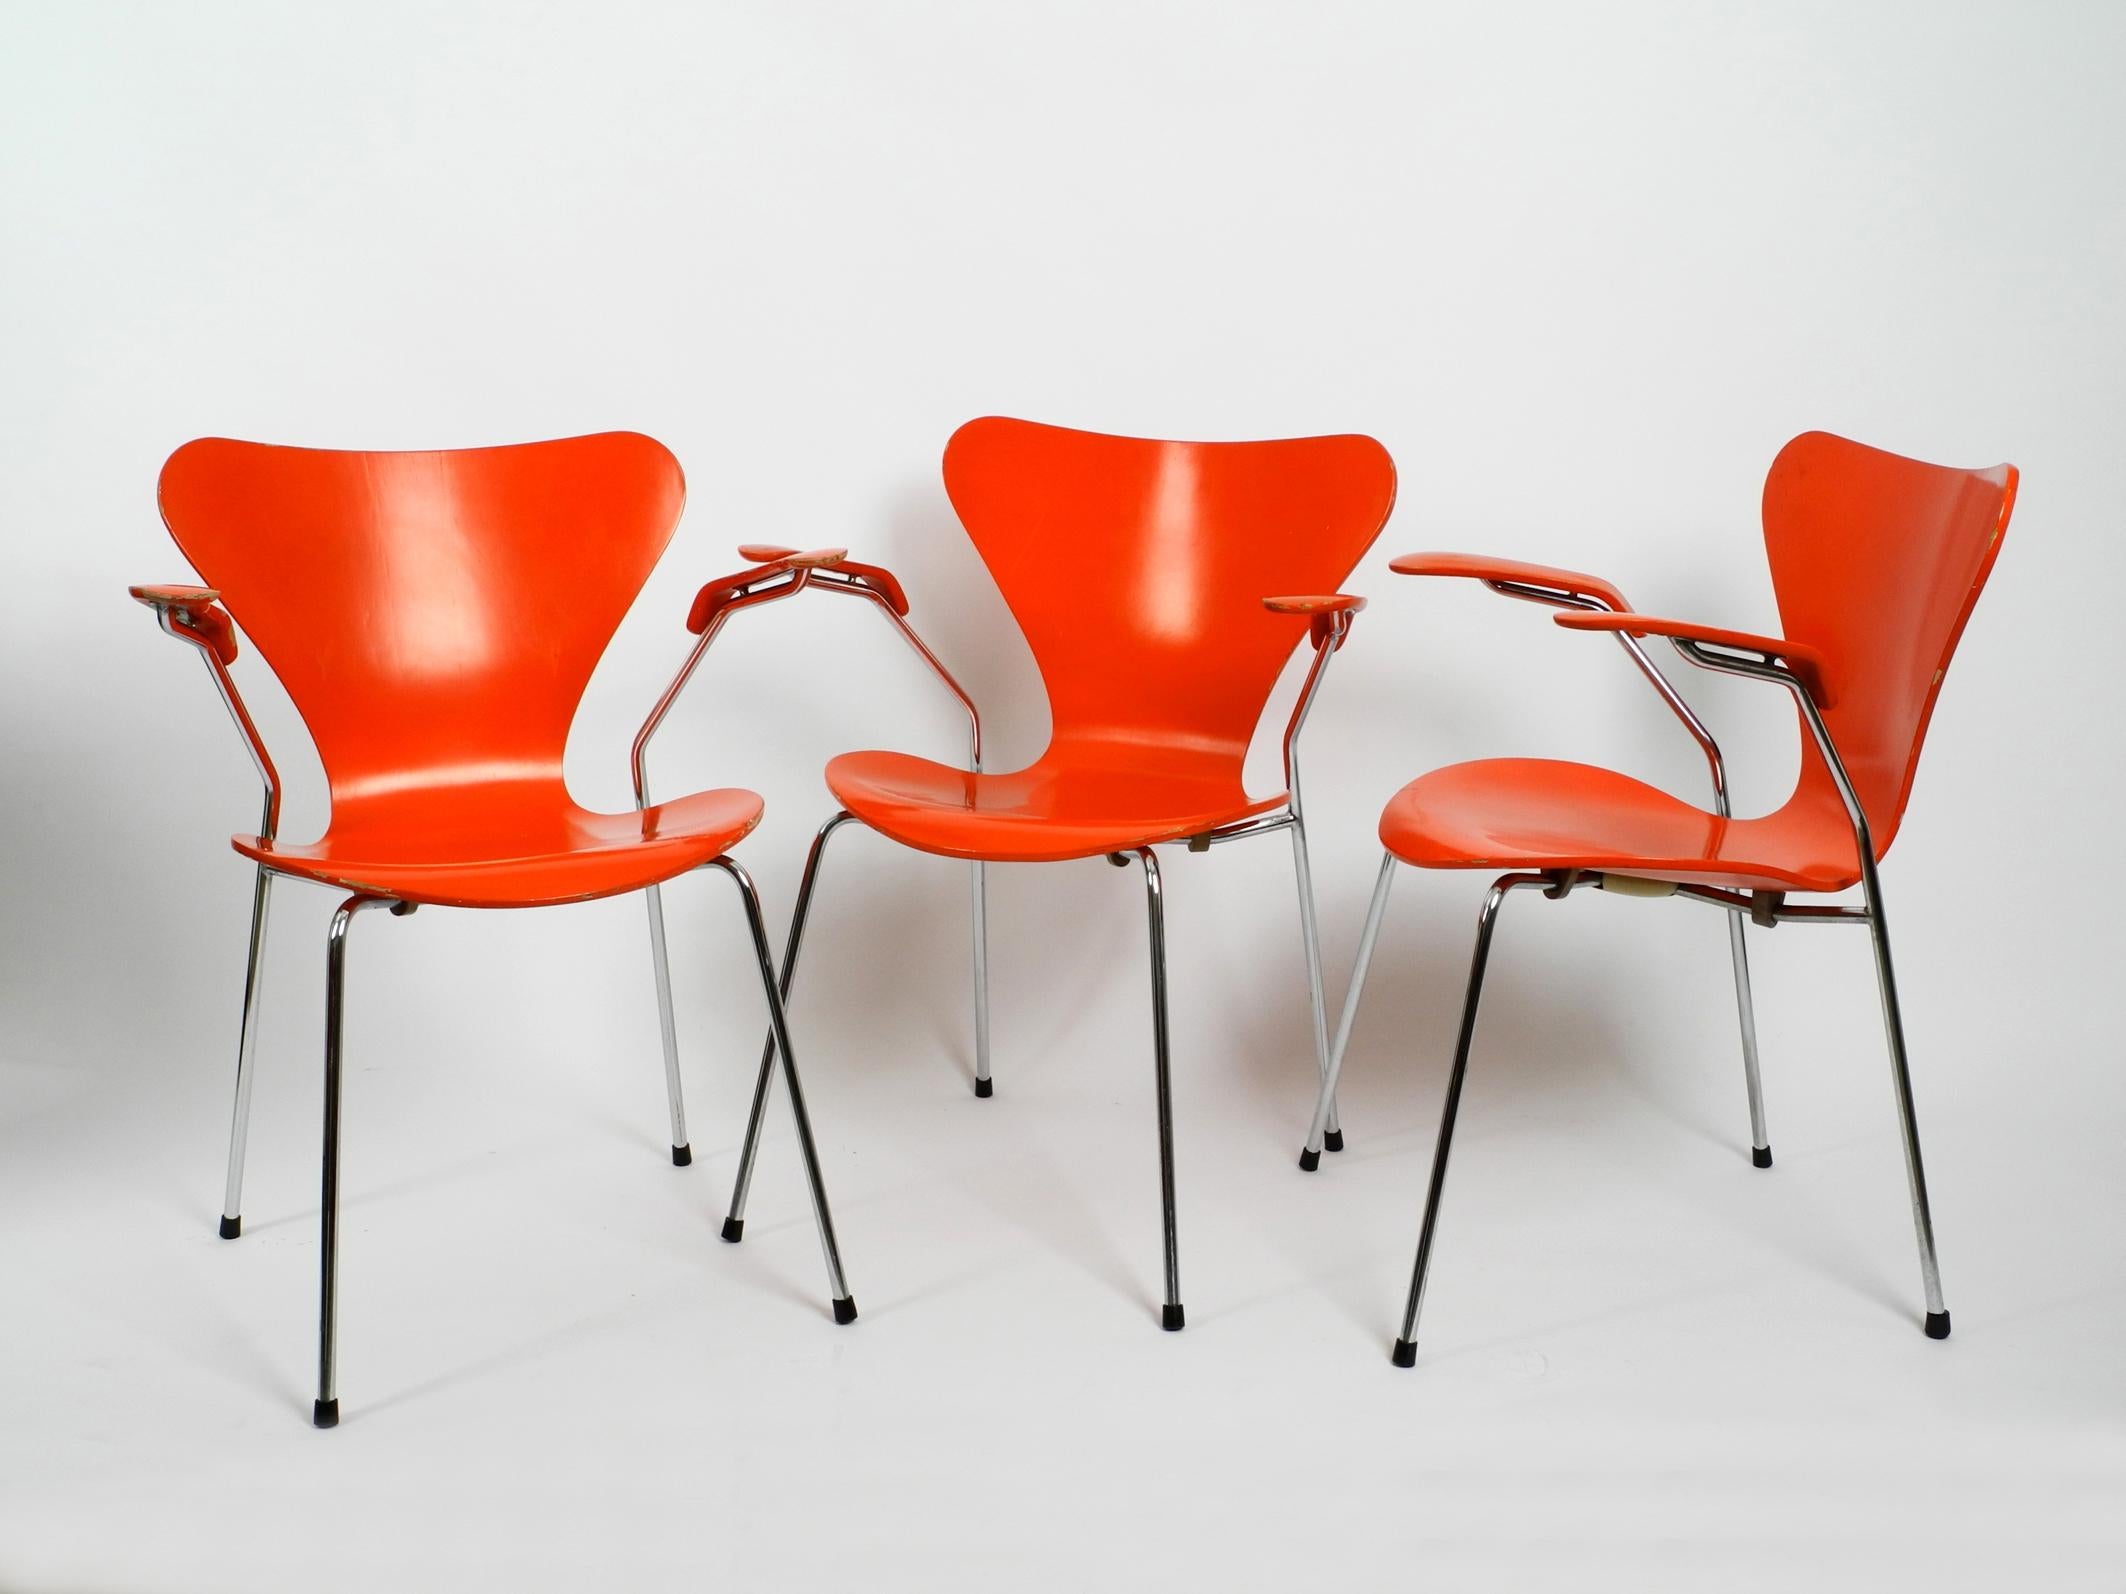 Drei originale Arne Jacobsen Sessel aus Schichtholz Mod. 3207.
gestell aus verchromtem Stahlrohr.
Sehr selten mit der Originallackierung in Orange von 1982. 
Hergestellt von Fritz Hansen Dänemark. Mit Originaletikett auf der Unterseite.
Keine